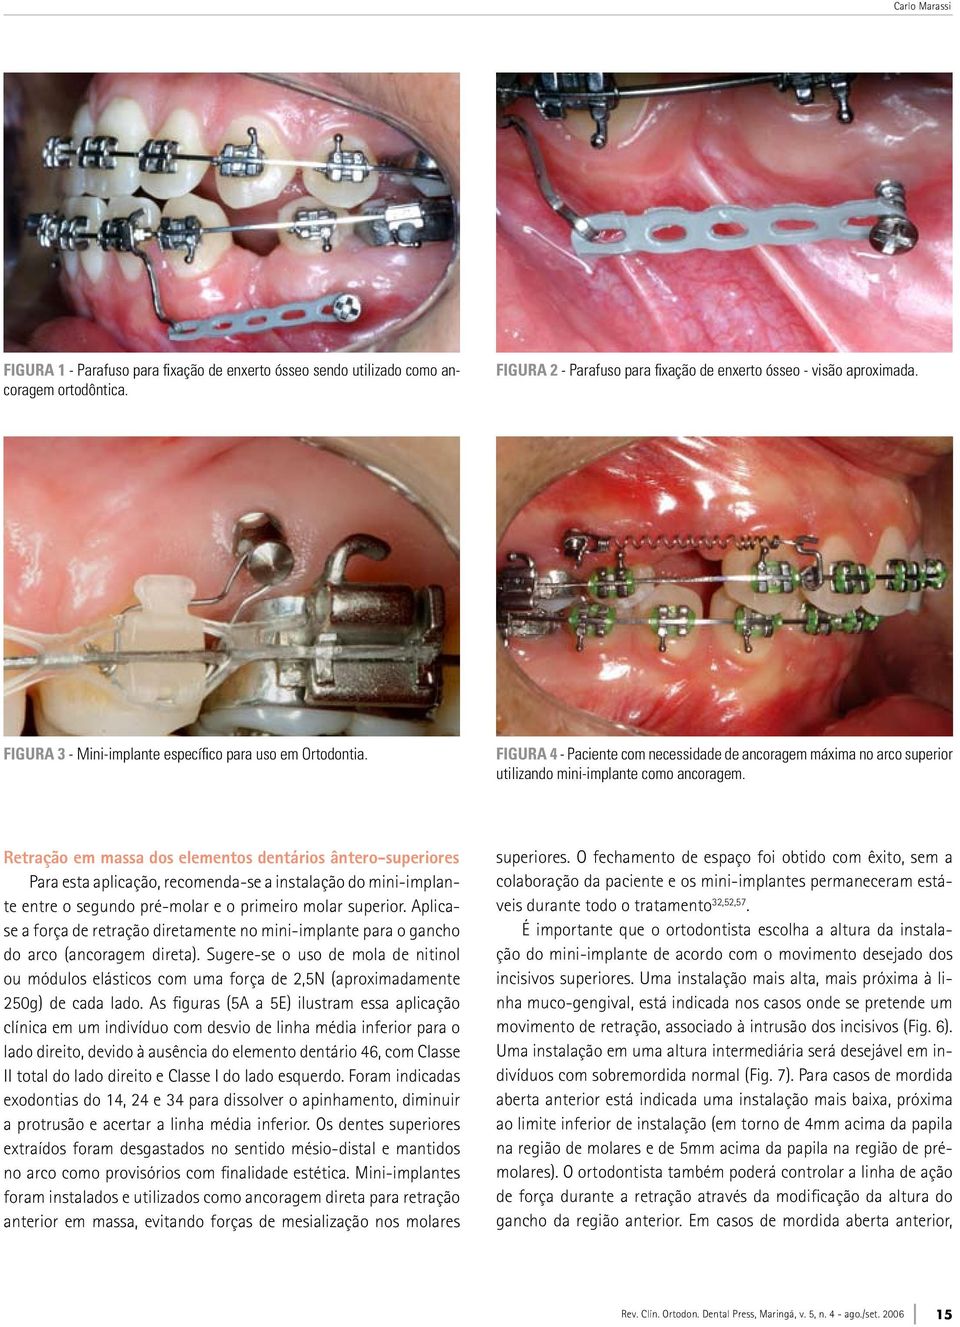 Retração em massa dos elementos dentários ântero-superiores Para esta aplicação, recomenda-se a instalação do mini-implante entre o segundo pré-molar e o primeiro molar superior.